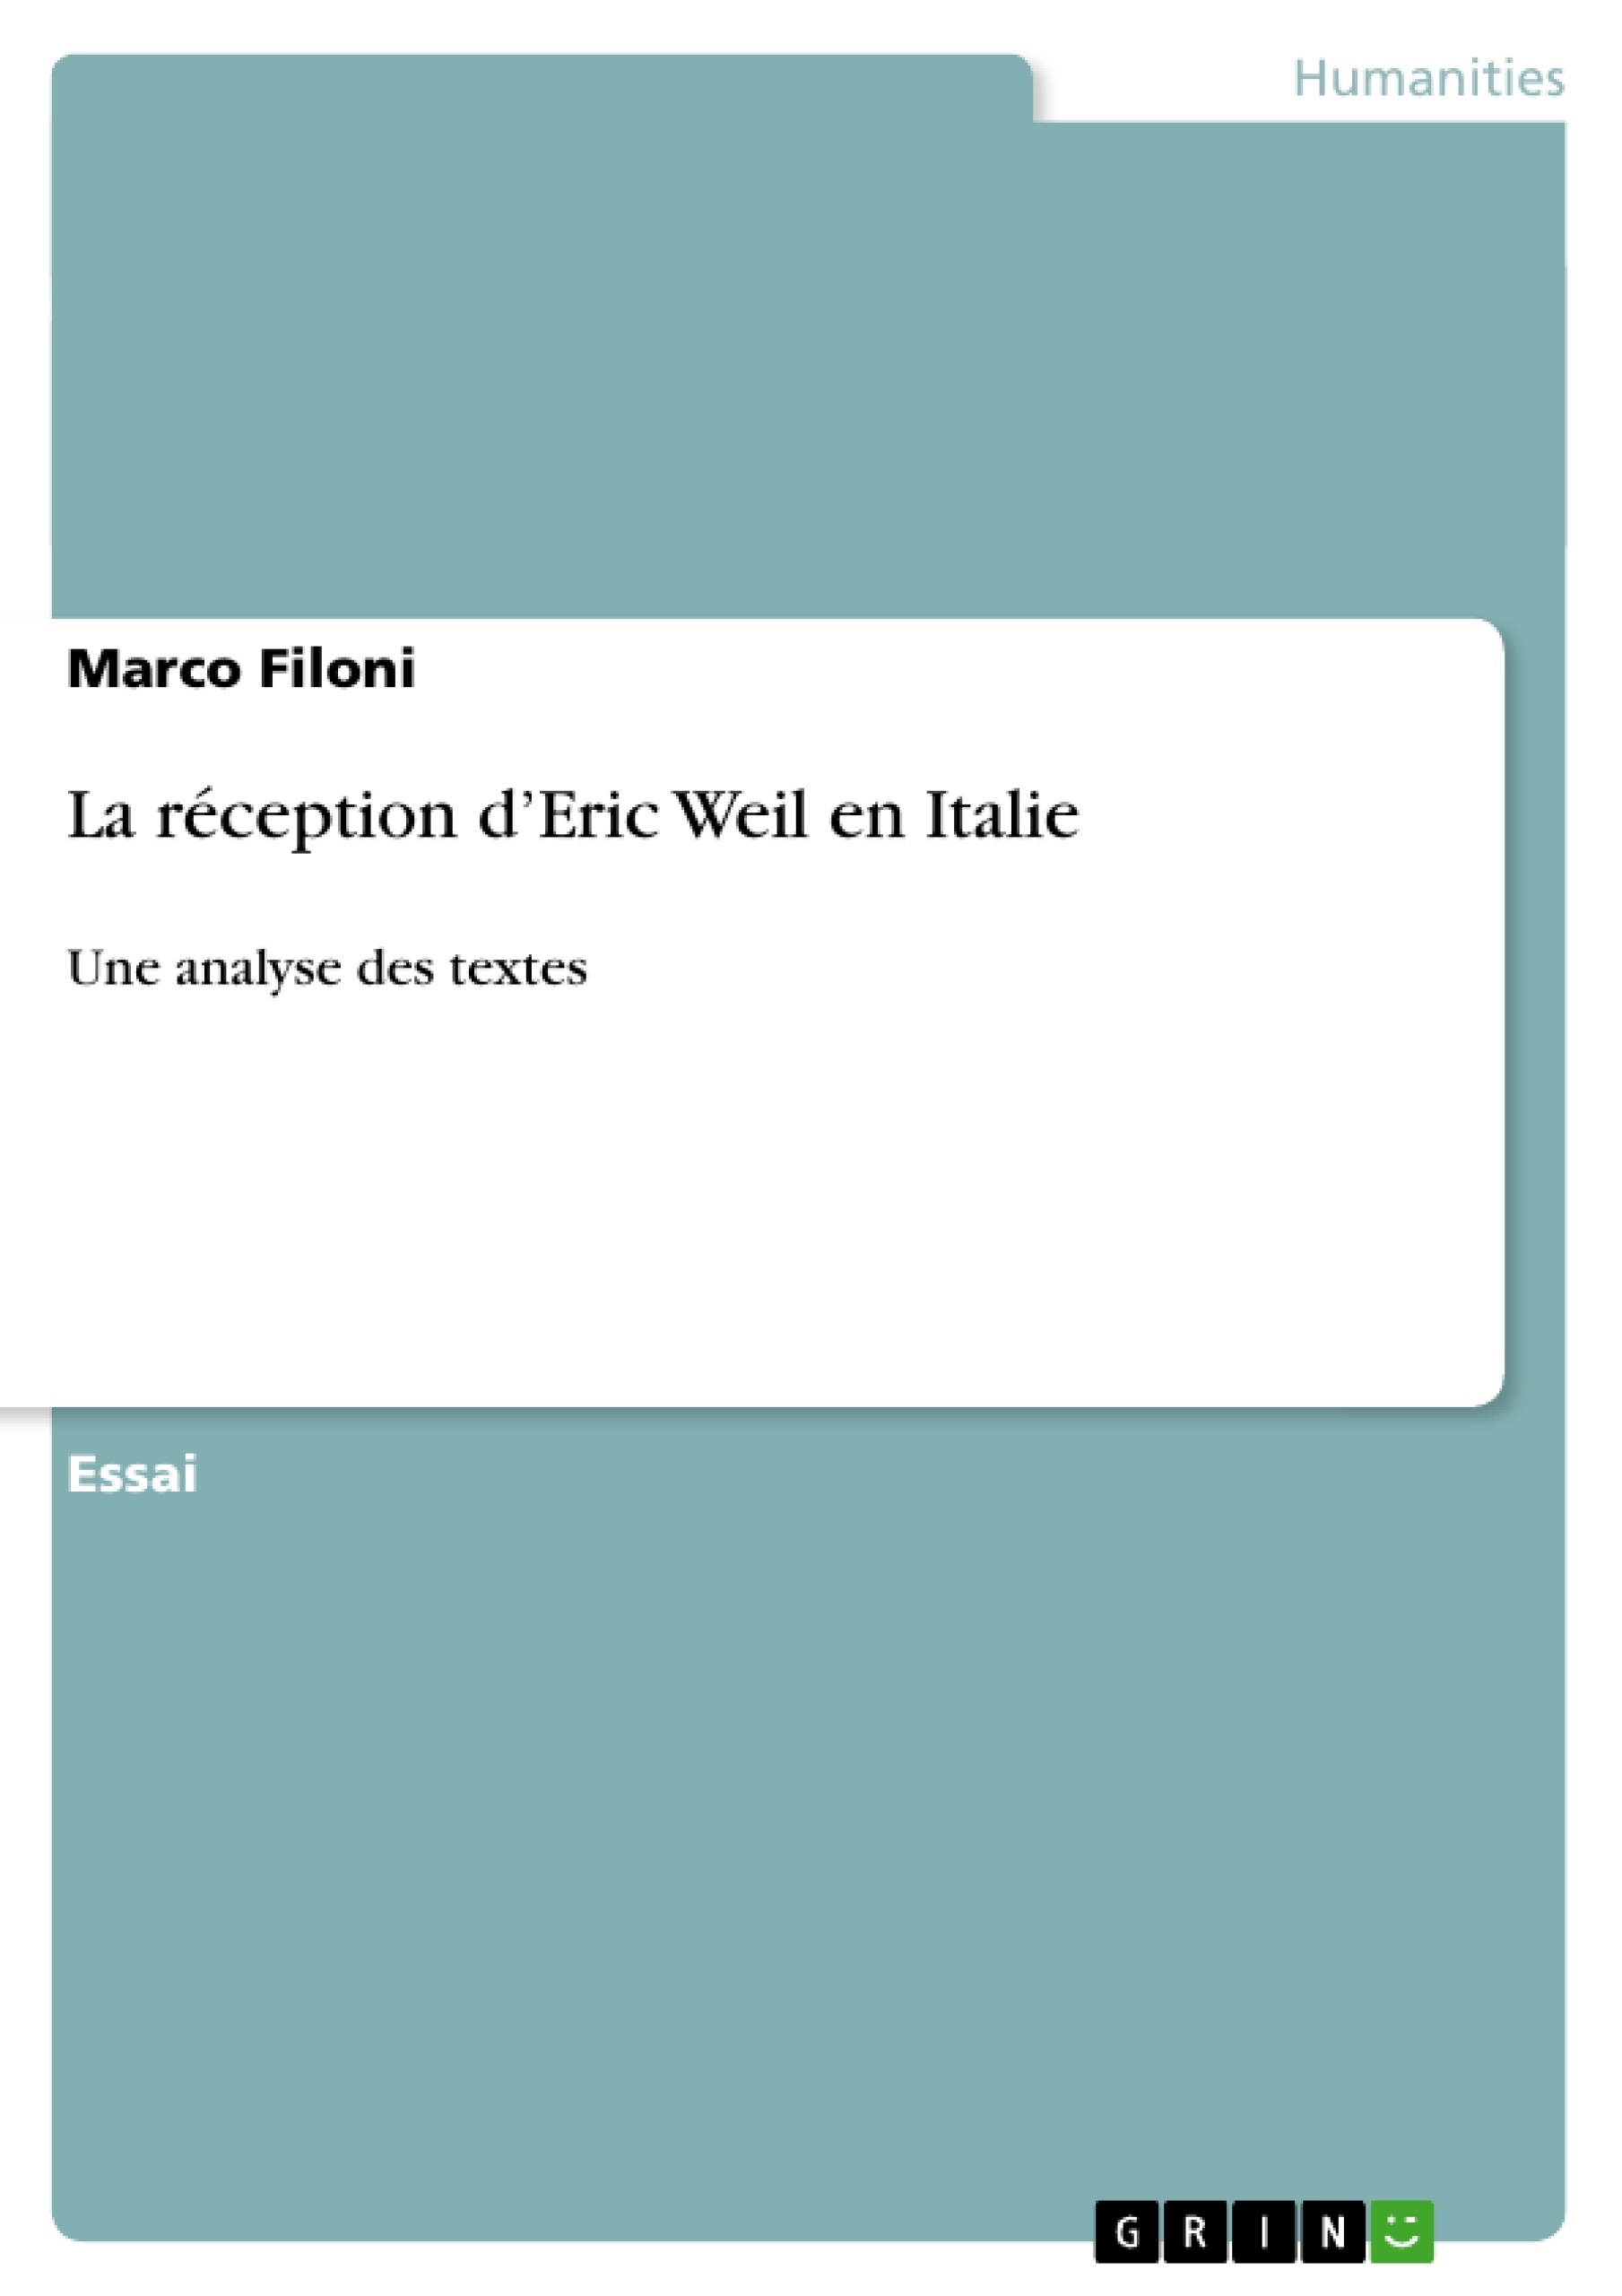 Titre: La réception d’Eric Weil en Italie